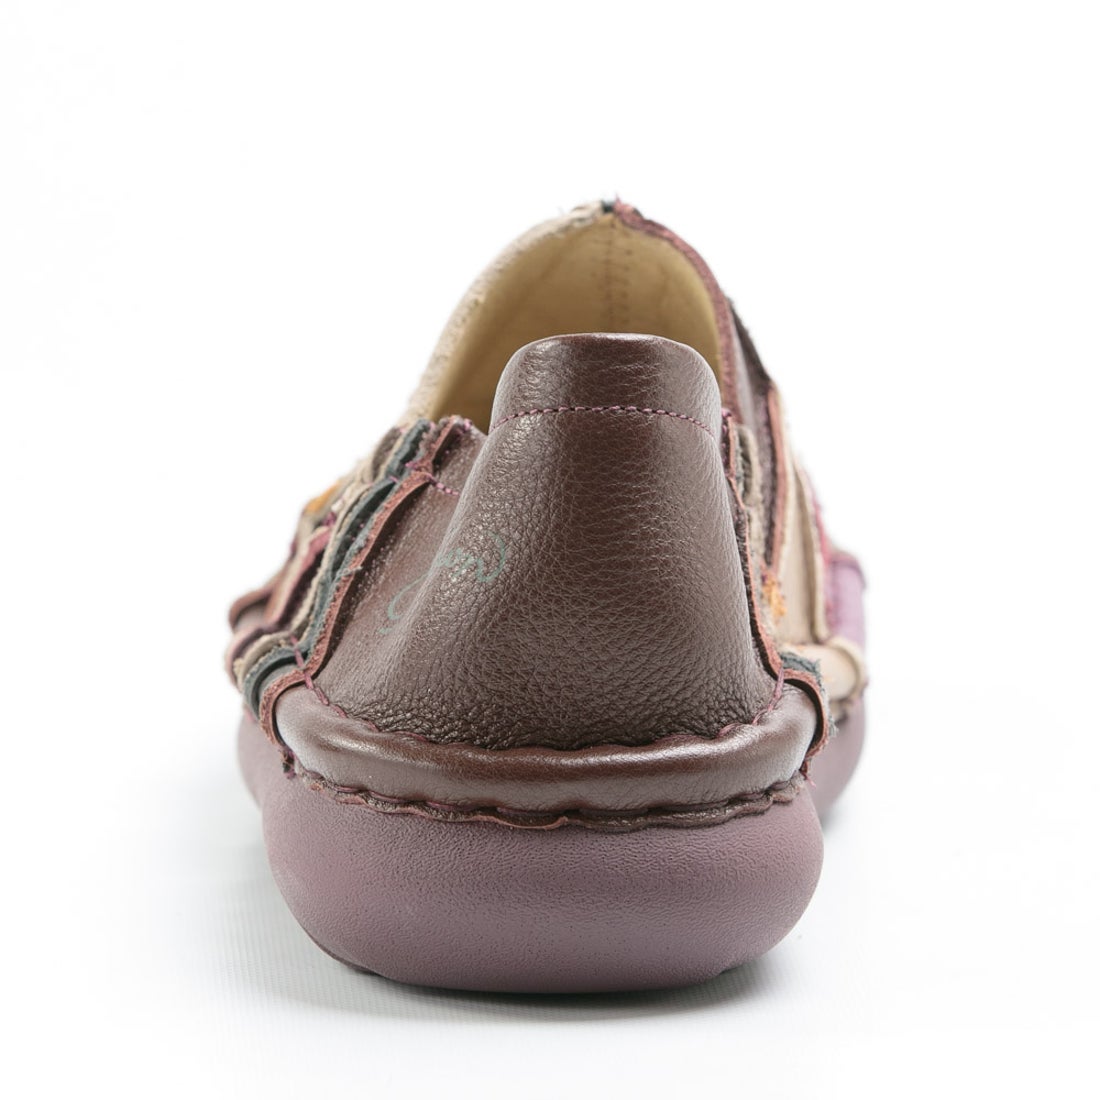 エスタシオン 靴  スリッポン パッチワーク マルチカラー 履きやすい 5層ソール 牛革 本革 手作り レザーシューズ